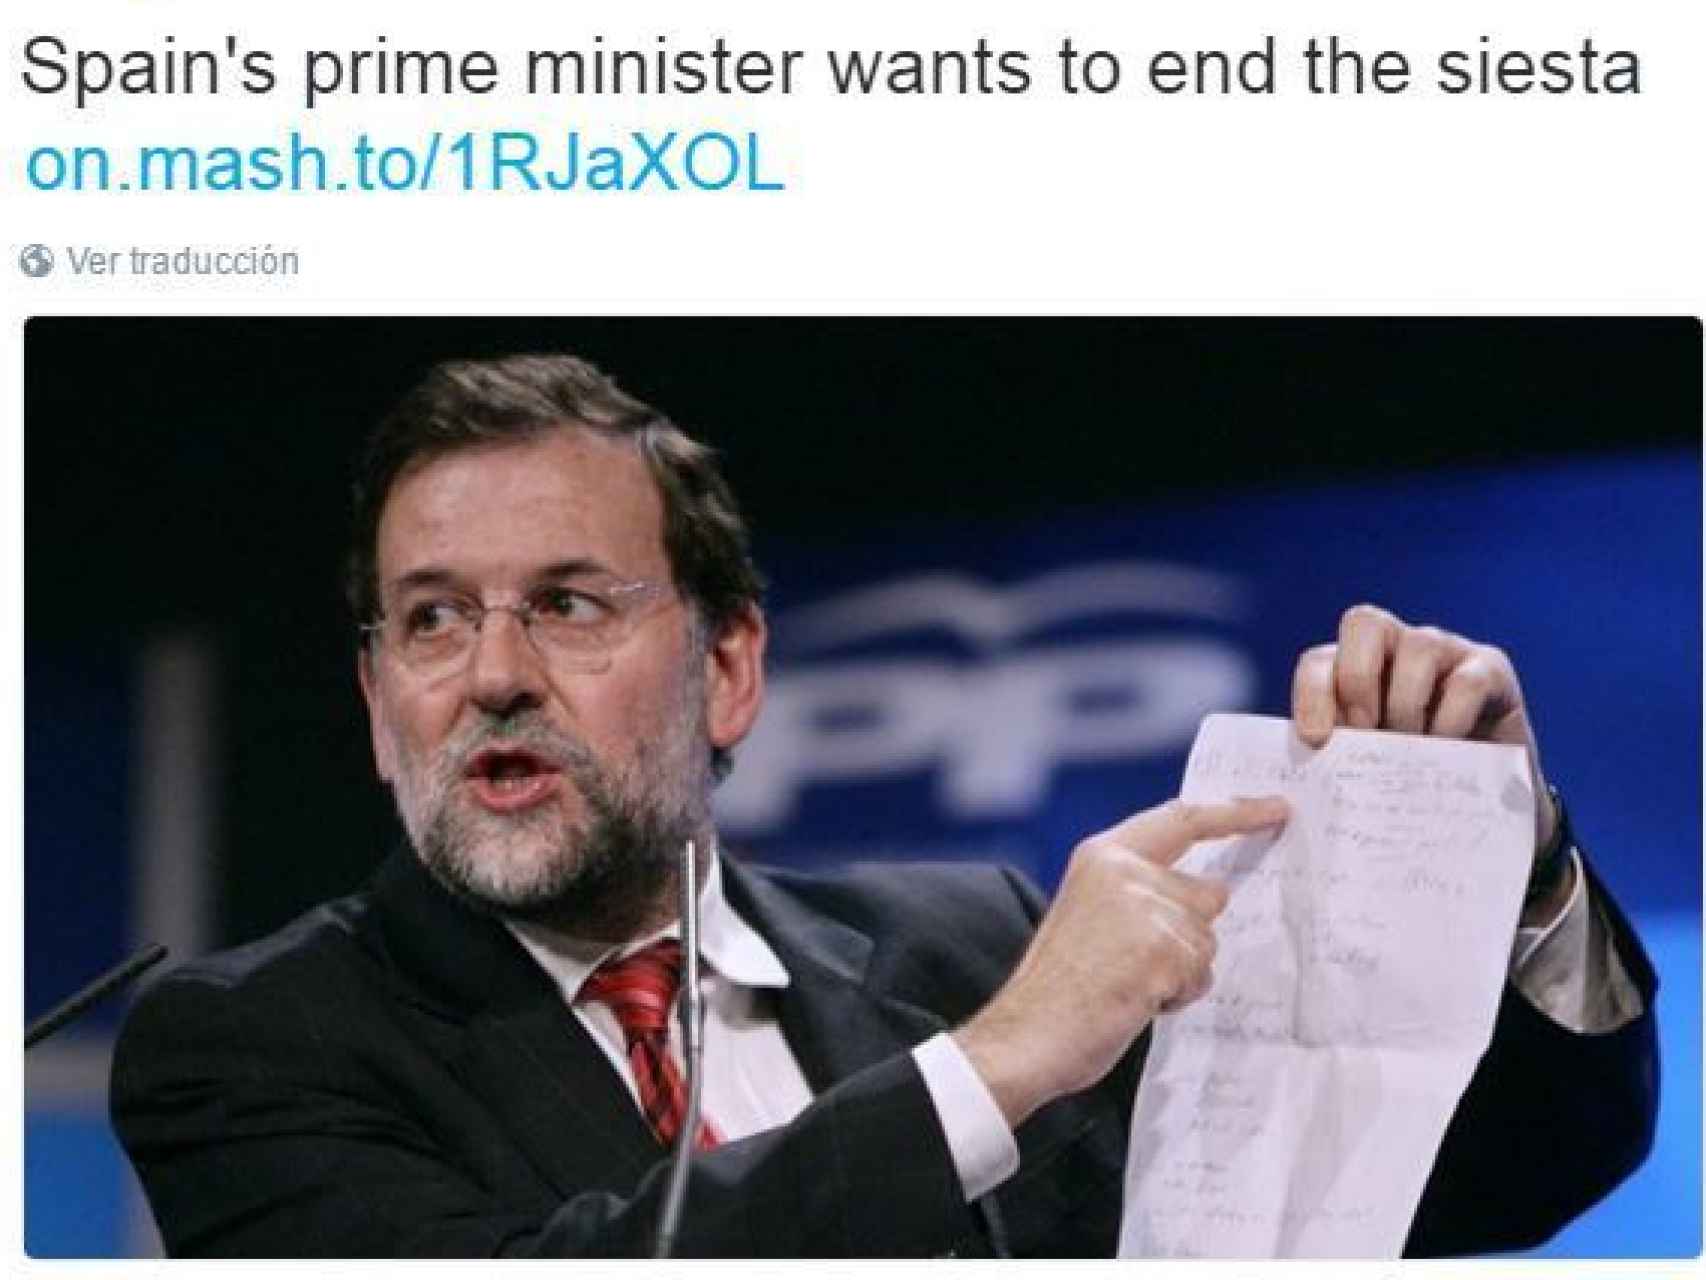 El titular de Mashable: El primer ministro de España quiere acabar con la siesta.